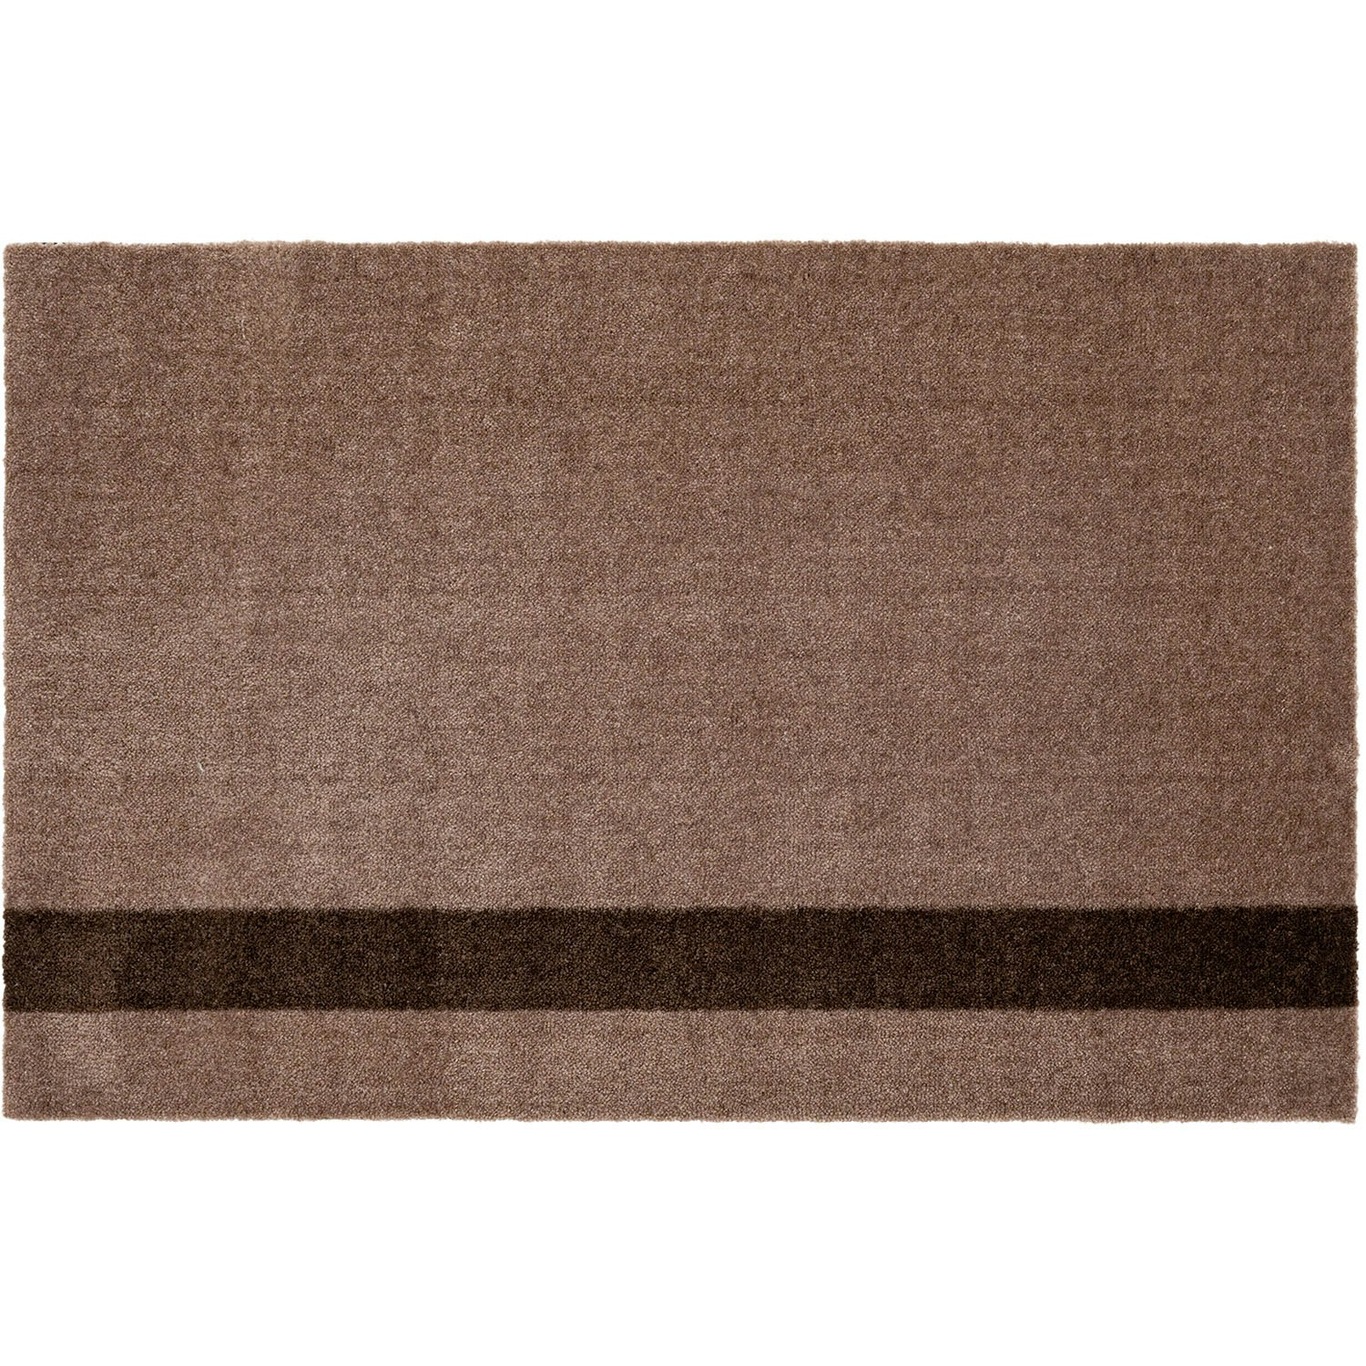 Stripes Vloerkleed Verticaal Zand/Bruin, 60x90 cm